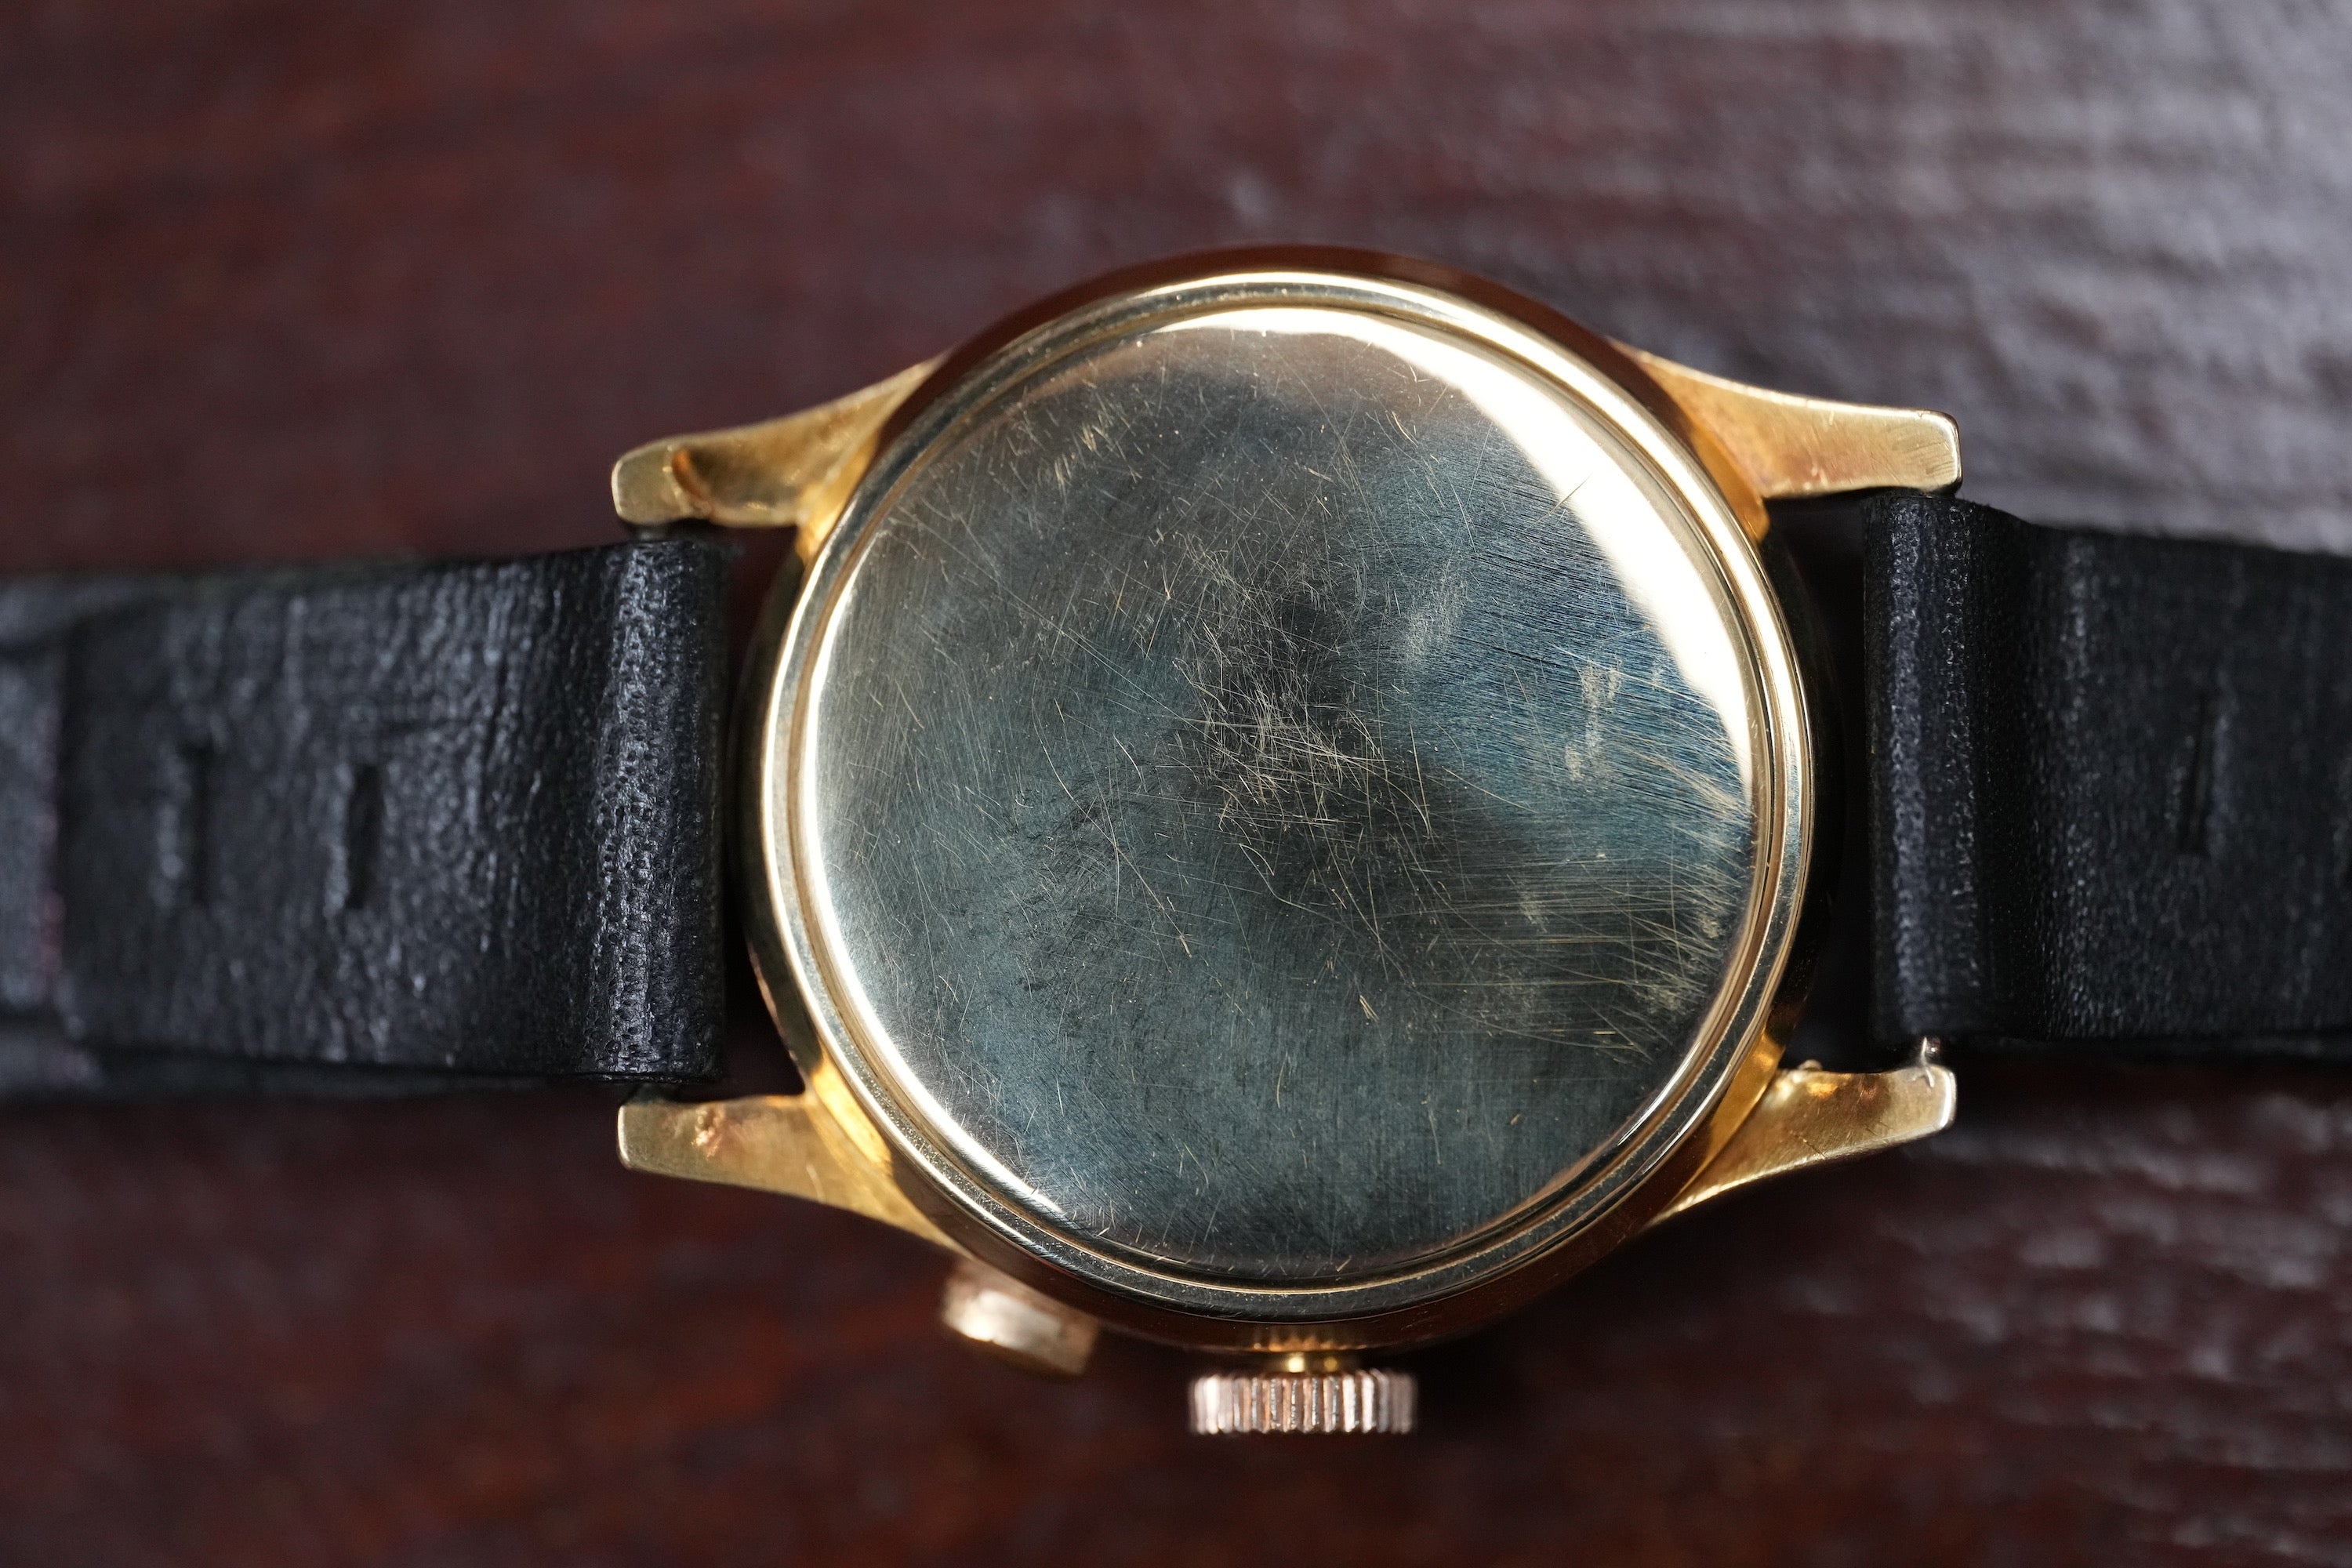 18k gold Solvil chronograph monopusher